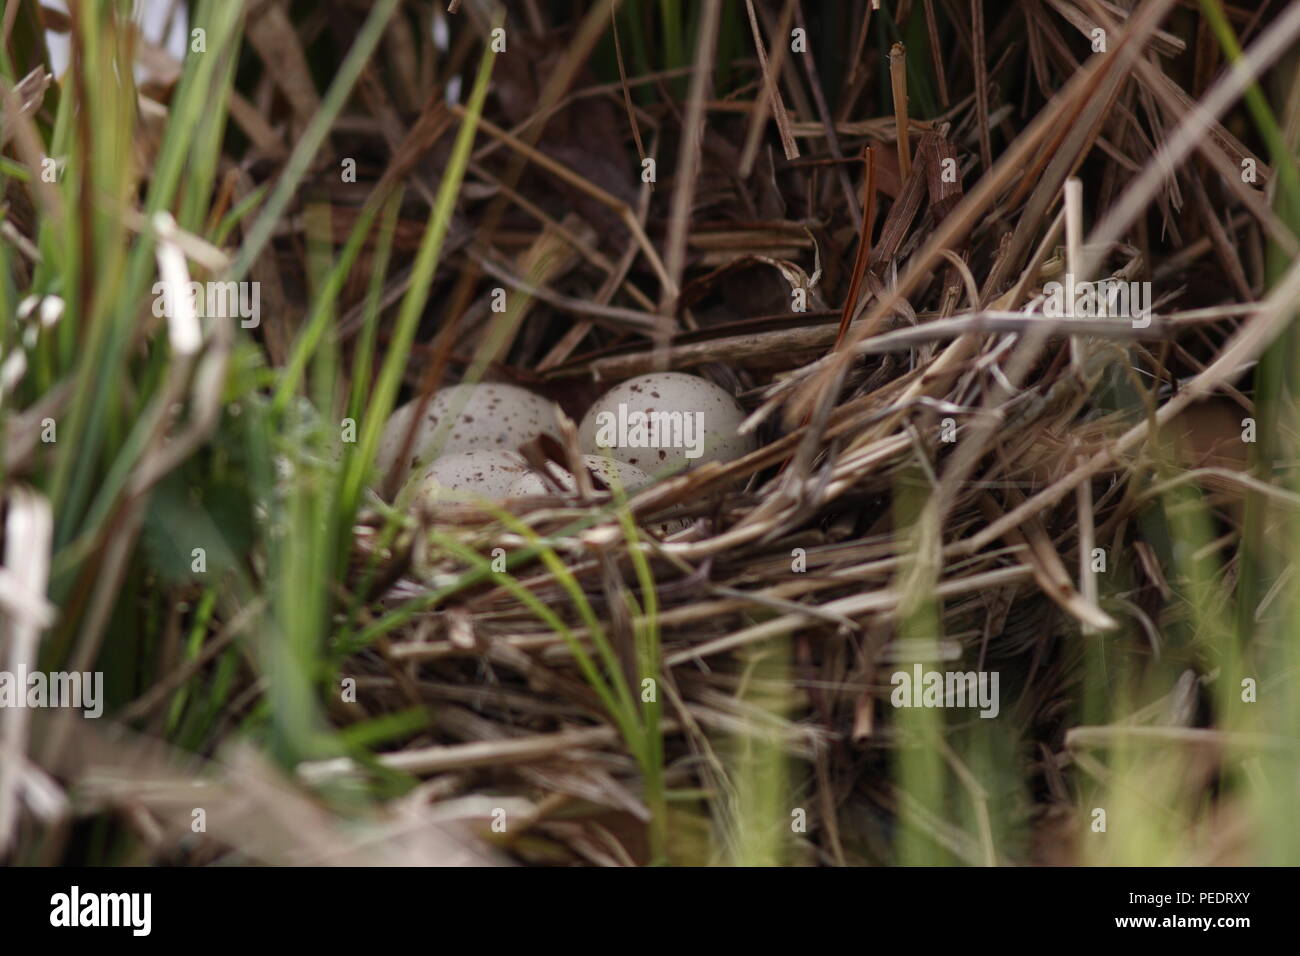 Sumpfhuhn Nest mit Sahne, weissgepunktet Eier, im Schilf in einem Gartenteich. Ein Zeichen der Vögel um den Teich, Nest aus getrocknetem Schilf. Stockfoto